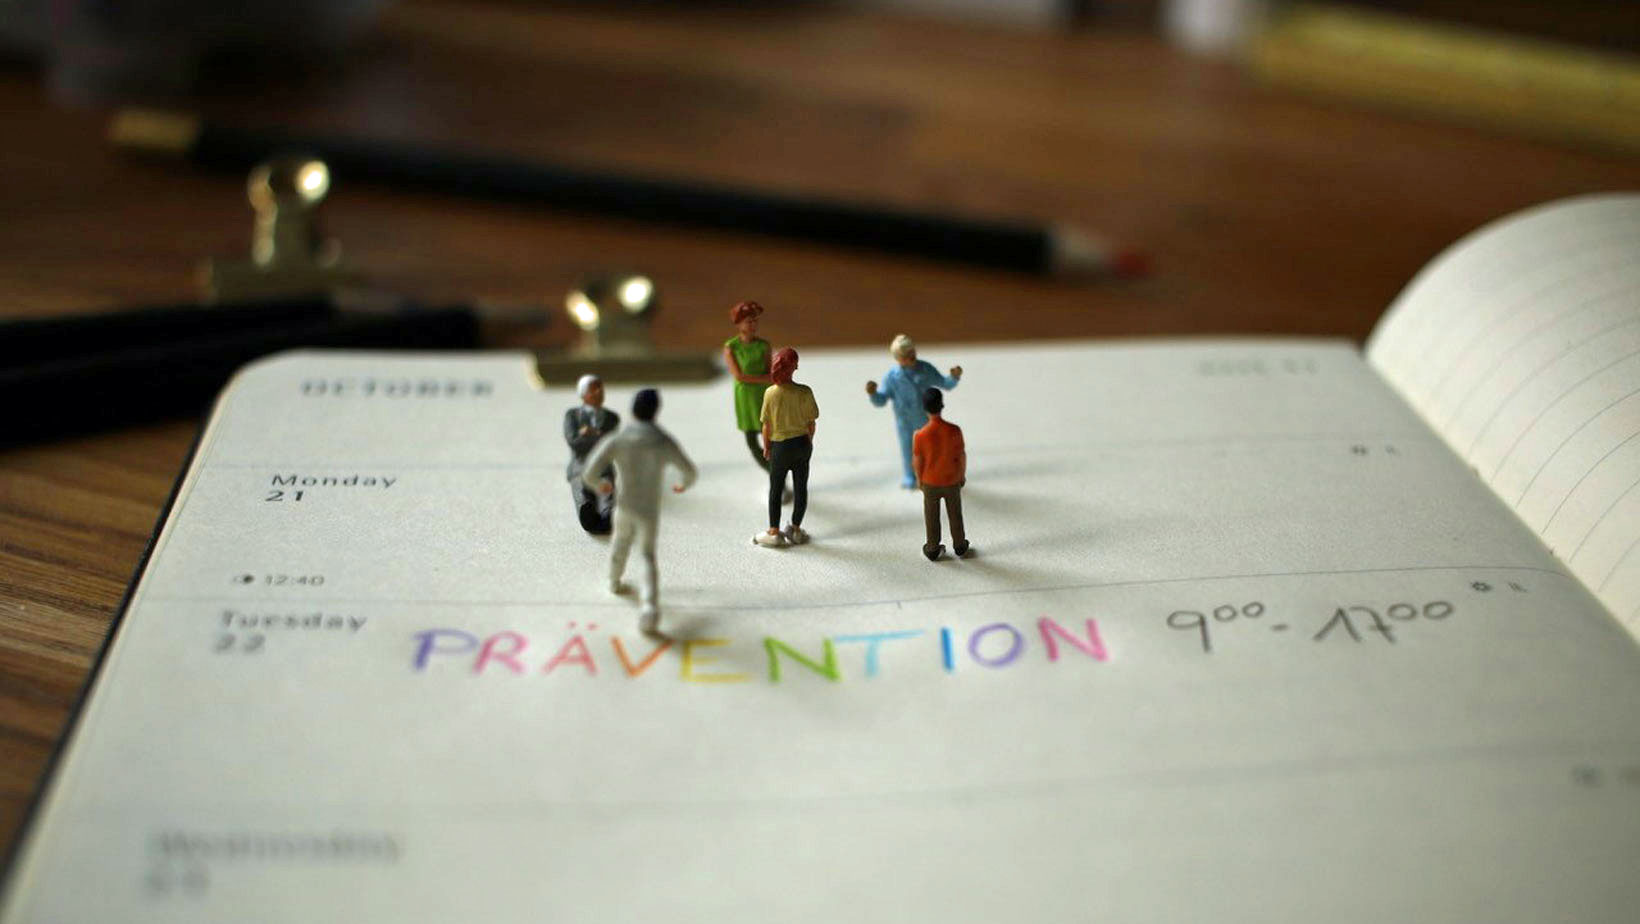 Modellfiguren stehen auf einem aufgeschlagenen Kalender, in dem ein Termin für eine Präventionsschulung eingetragen ist